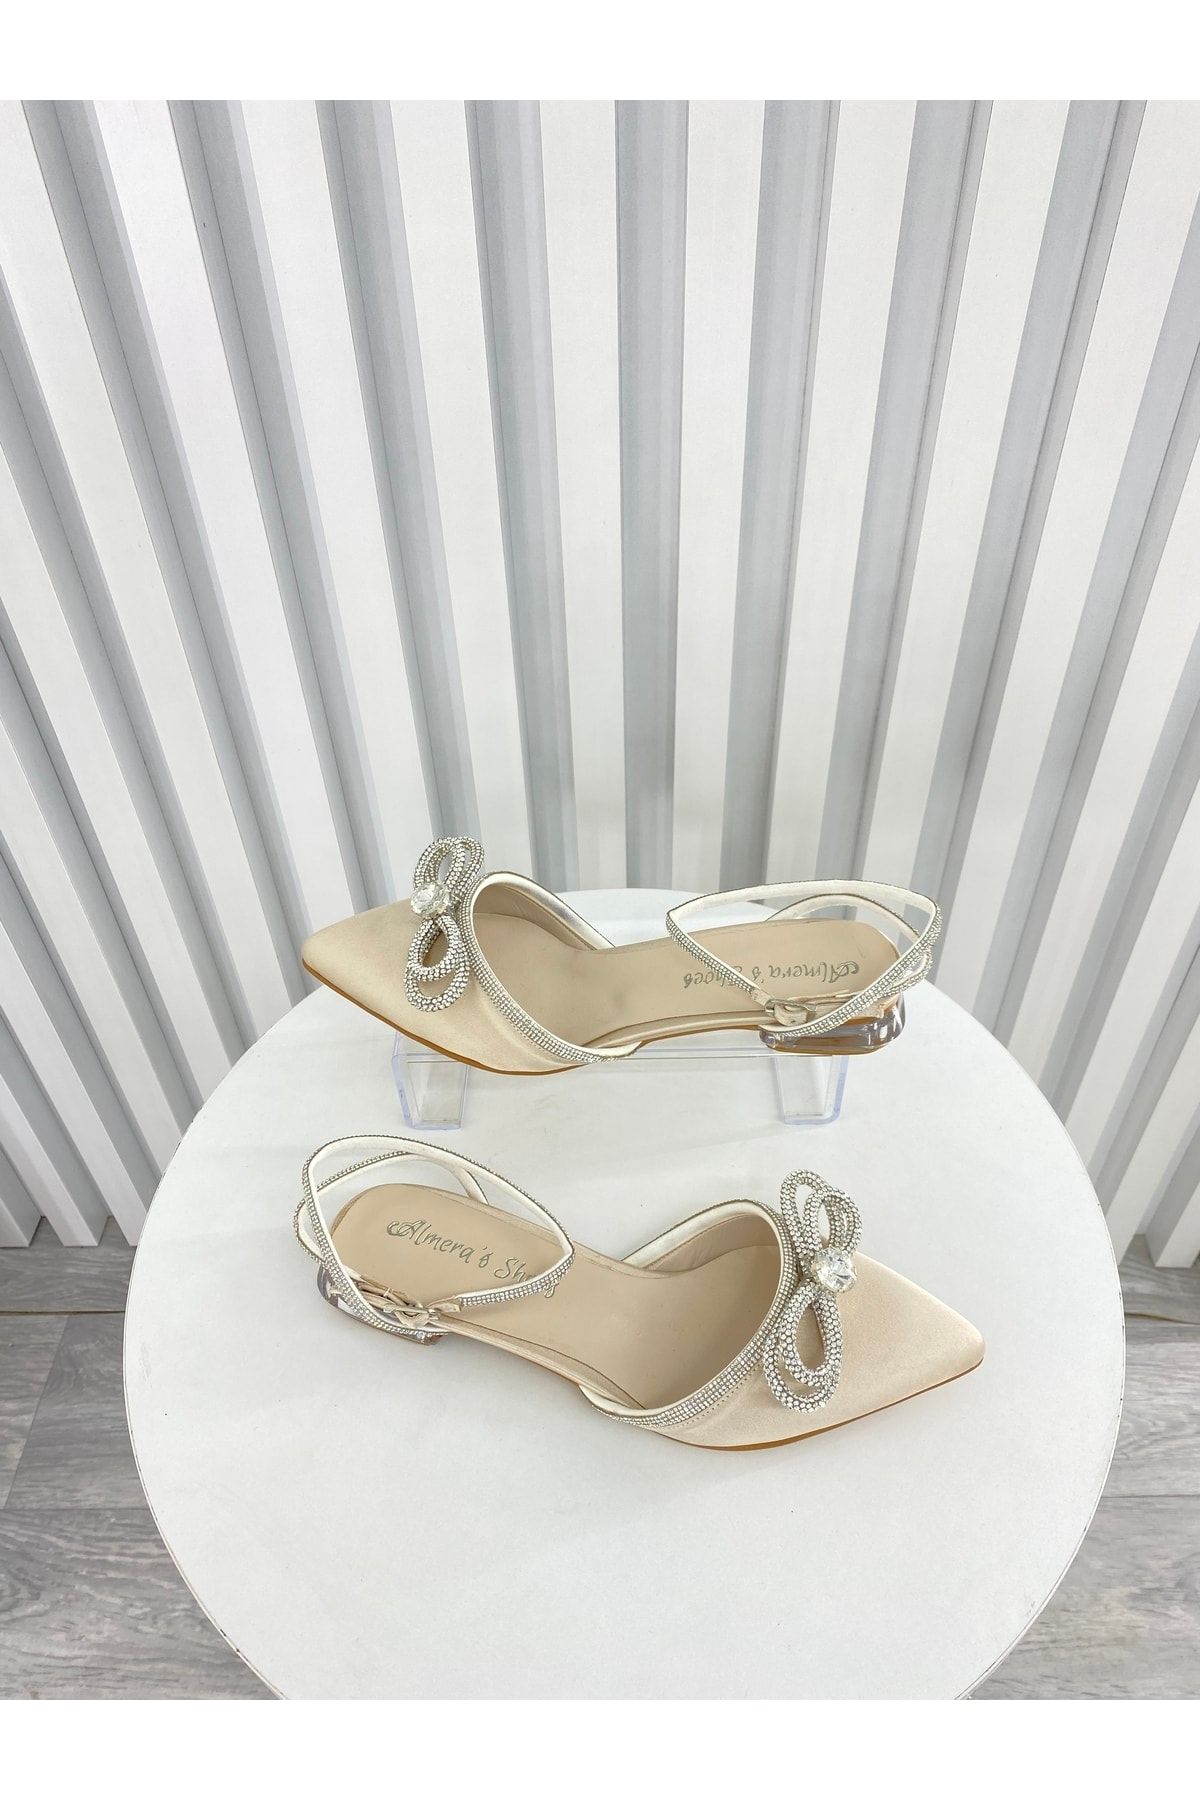 Almera's Shoes Ten Saten Taşlı 2,5 Cm Topuklu Abiye Ayakkabı